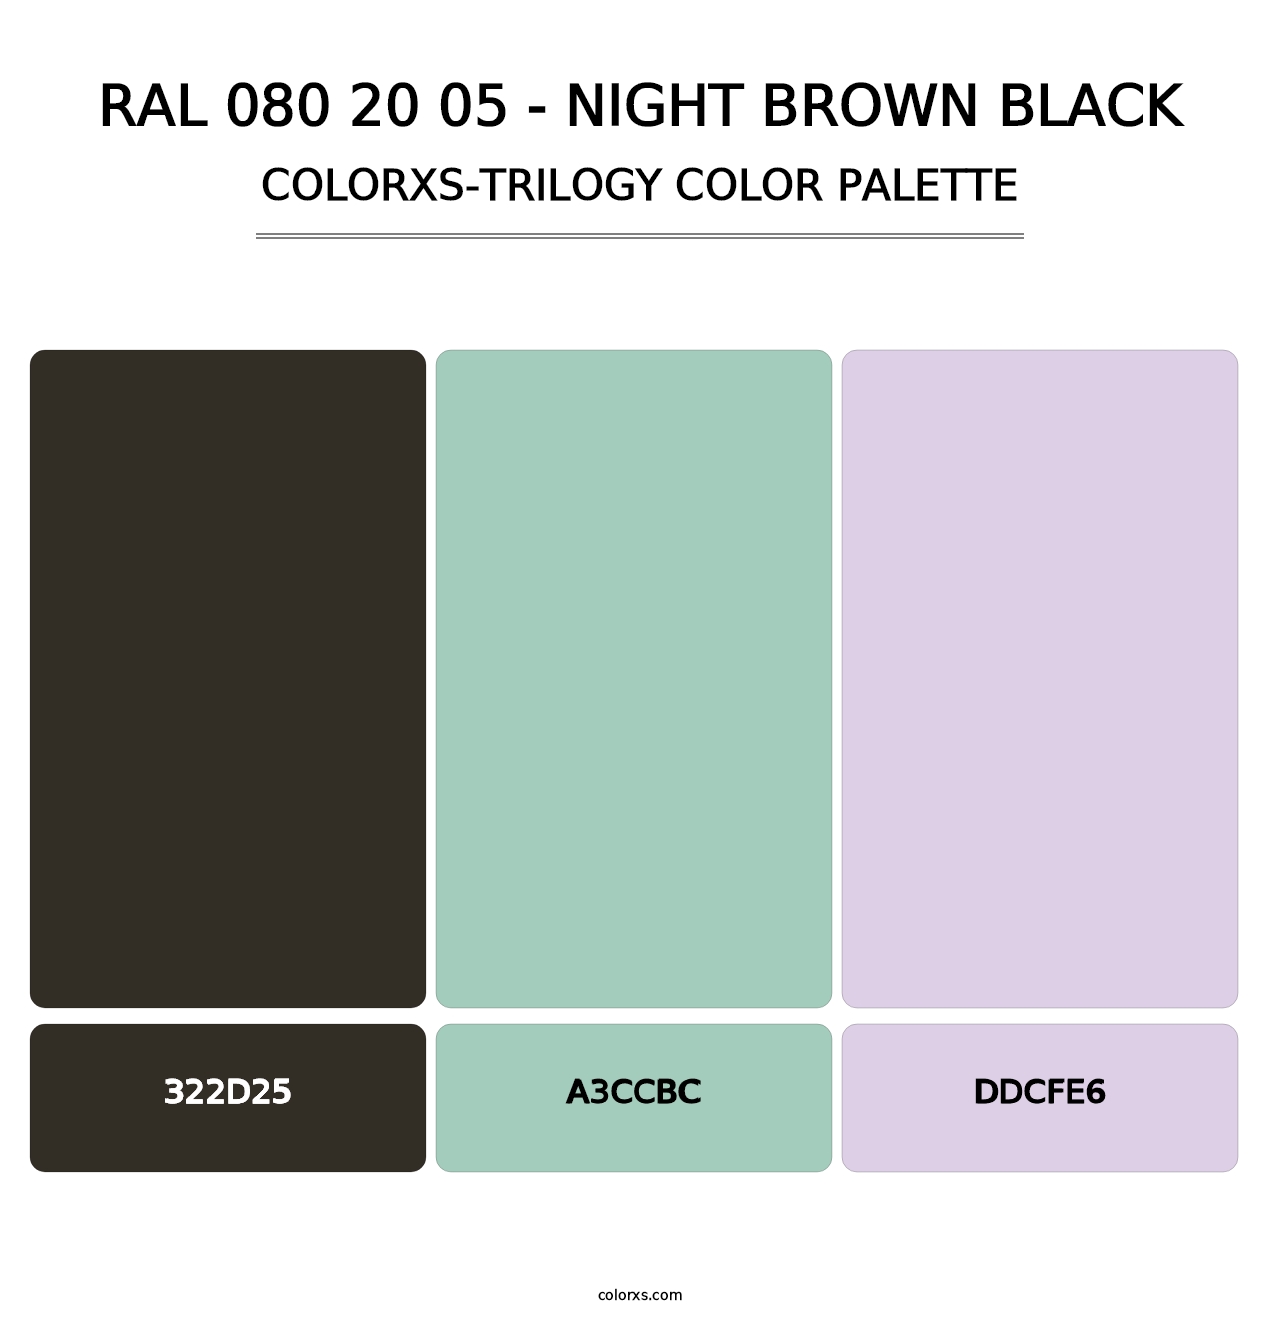 RAL 080 20 05 - Night Brown Black - Colorxs Trilogy Palette